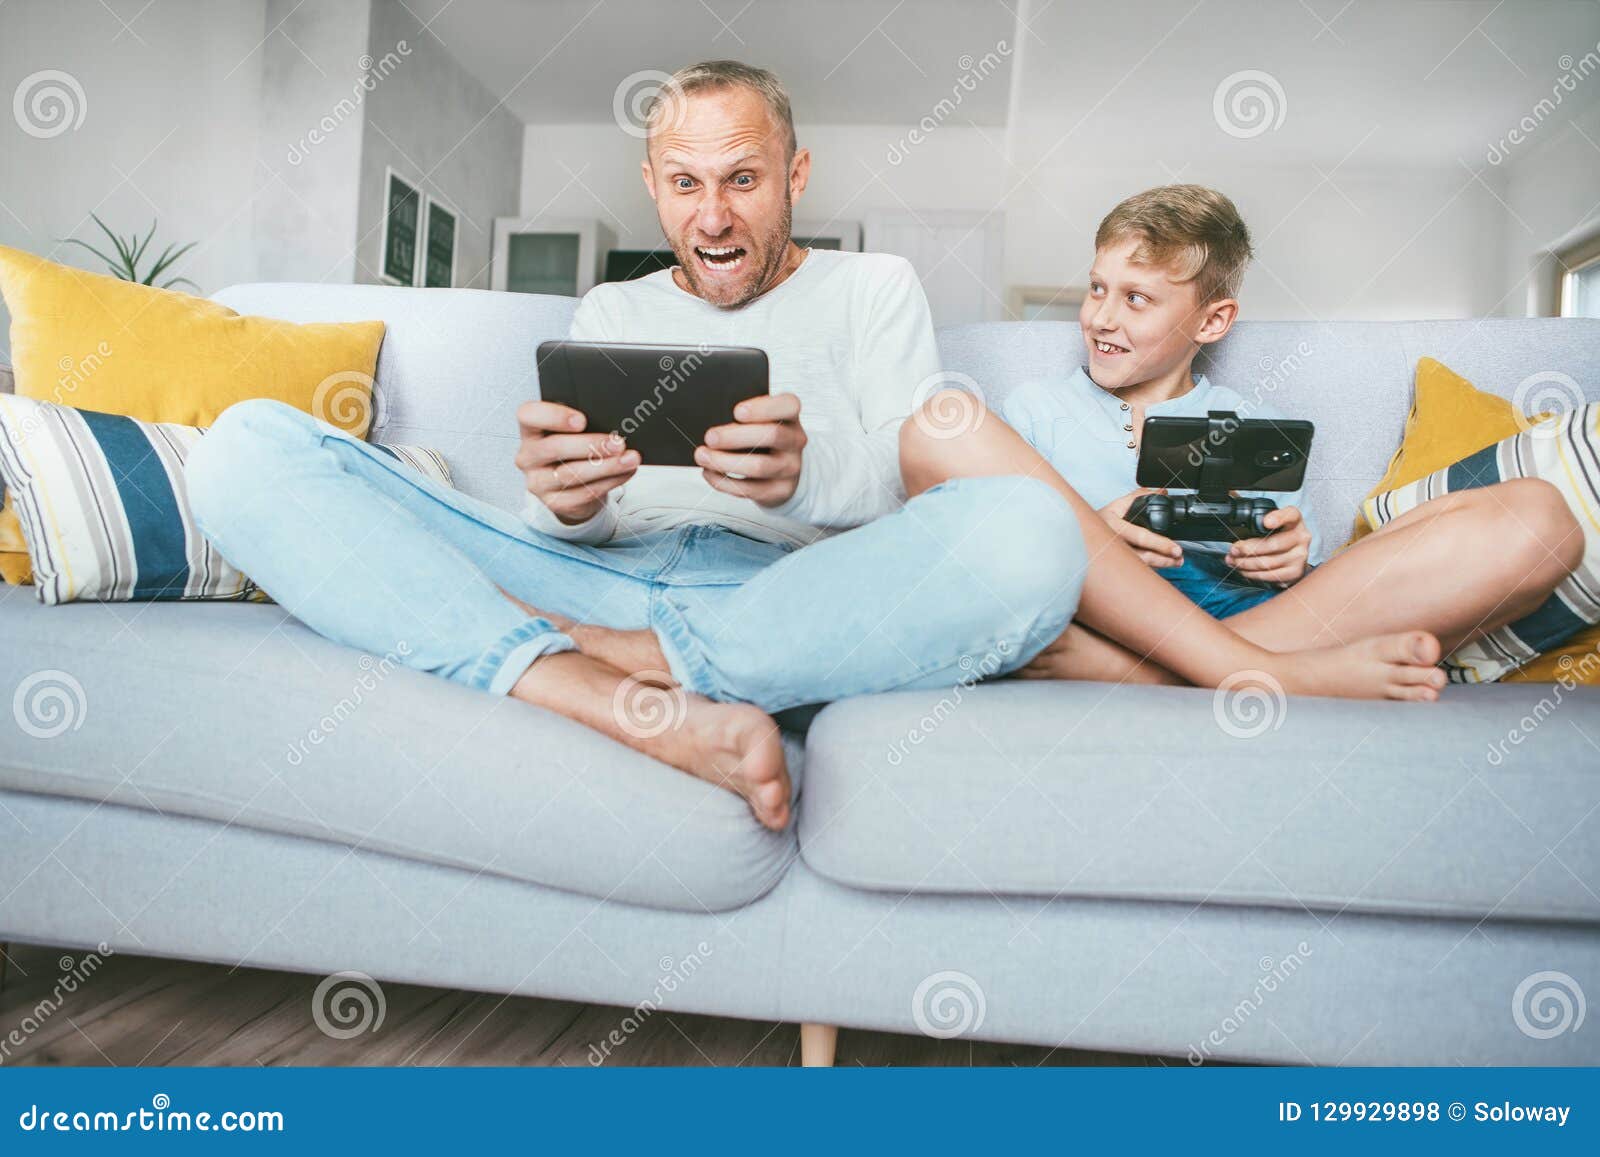 Ο πατέρας μου funs από τα παιχνίδια PC ακριβώς όπως με Πατέρας και γιος που παίζουν συναισθηματικά με τις ηλεκτρονικές συσκευές: ταμπλέτα και gamepad συνεδρίαση στο καθιστικό